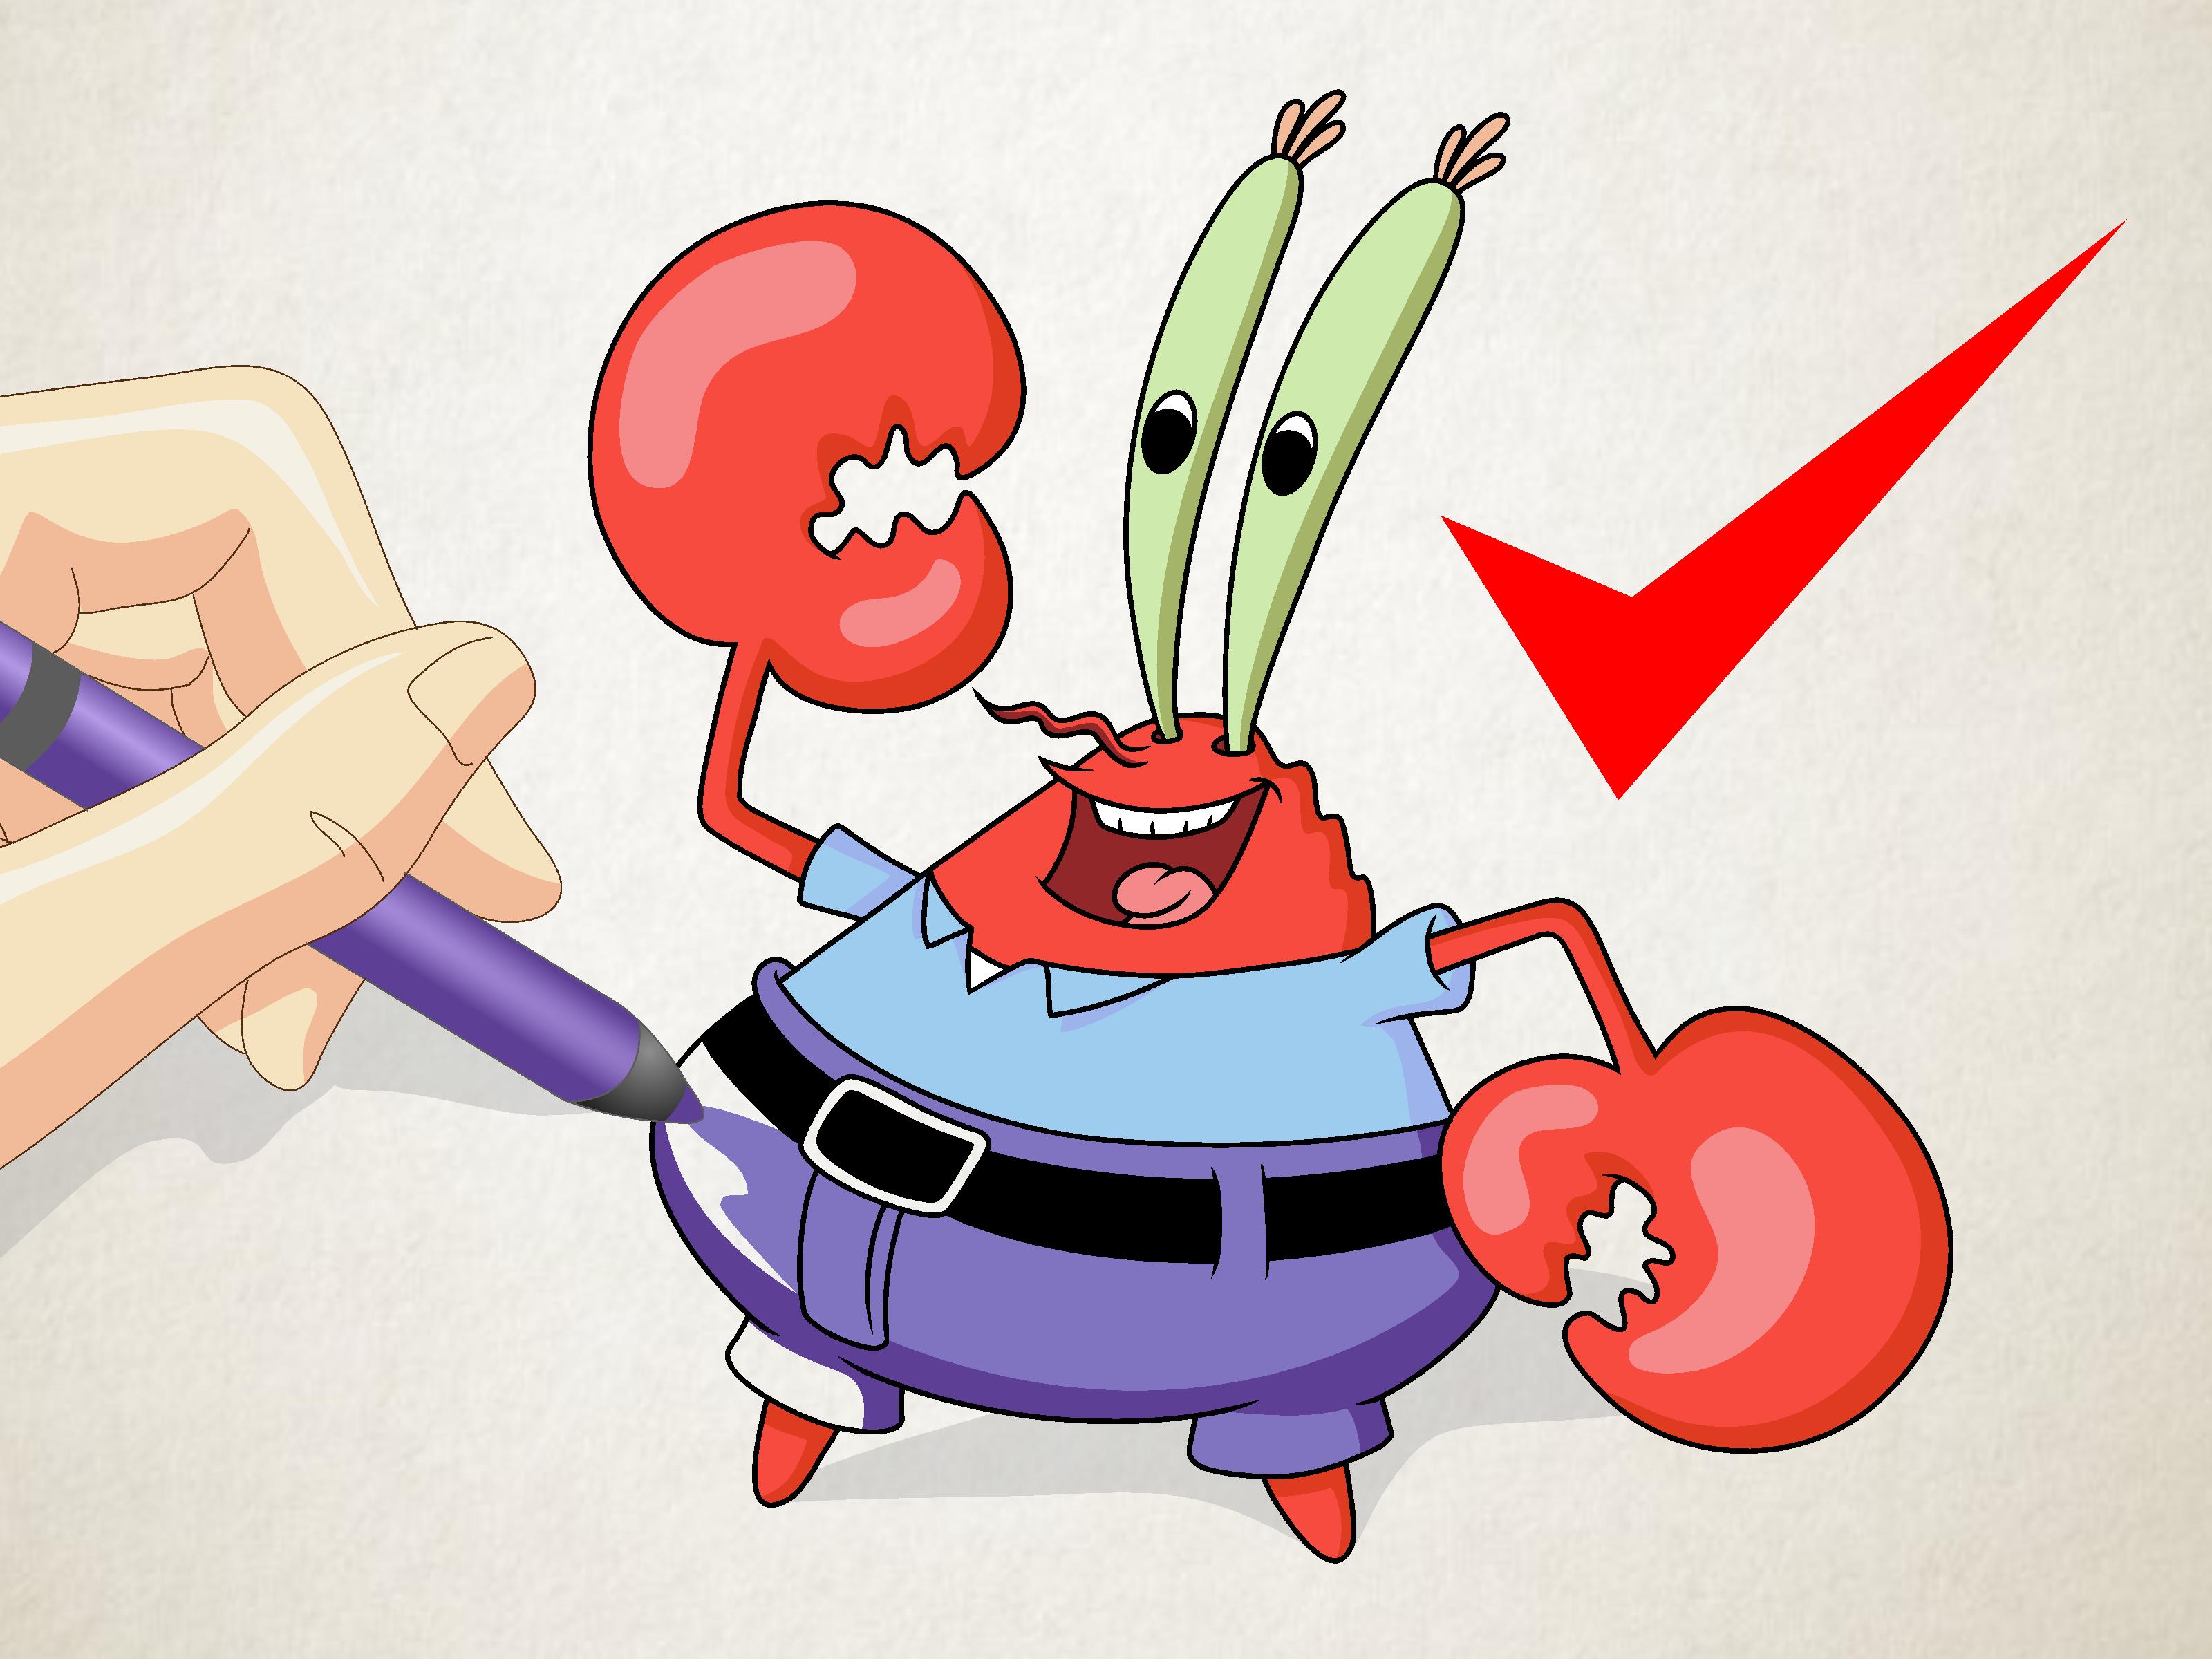 spongebob krusty krab cook off